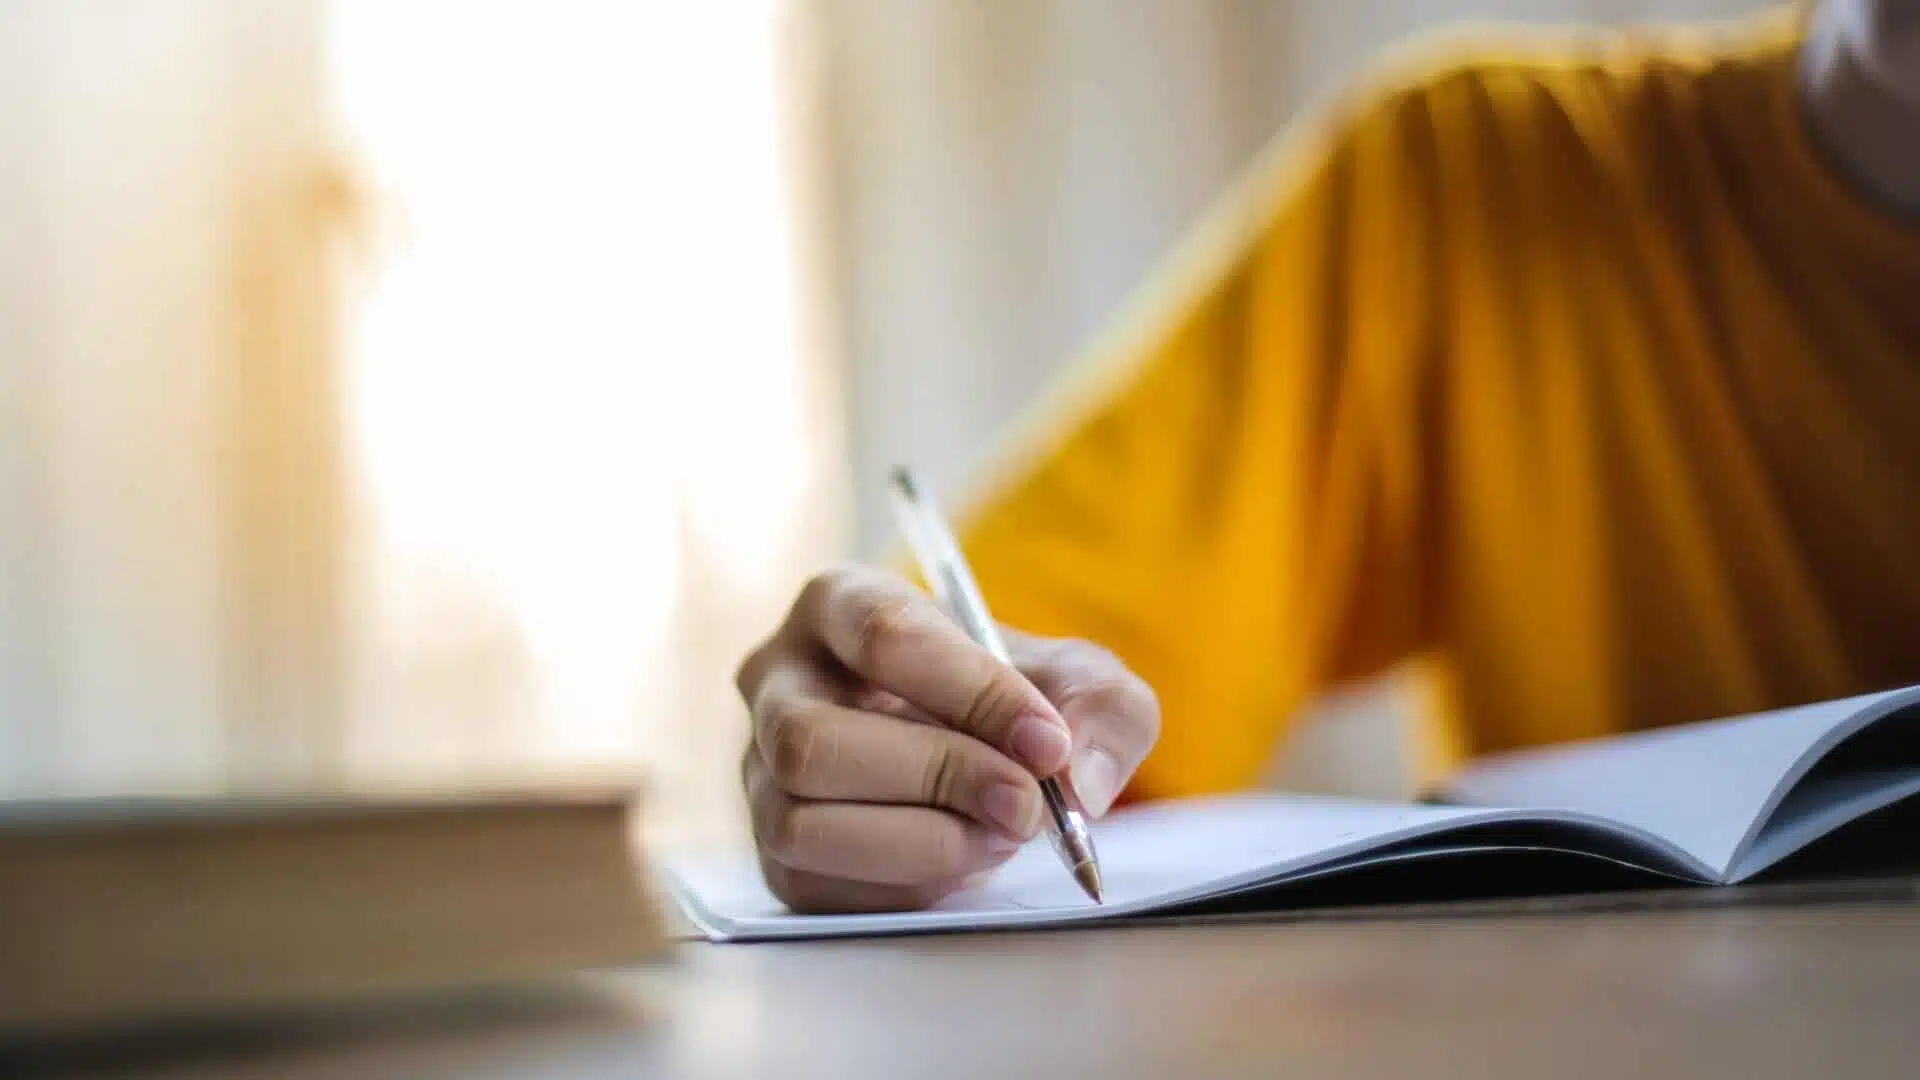 تصویر یک فرد که در حال یادگیری مطلبی است و همچنین در حال نکته برداری است و یک خودکار در دستش است که دارد روی دفتر چیزی را مینویسد. پلیور زرد لیمویی رنگی پوشیده است.